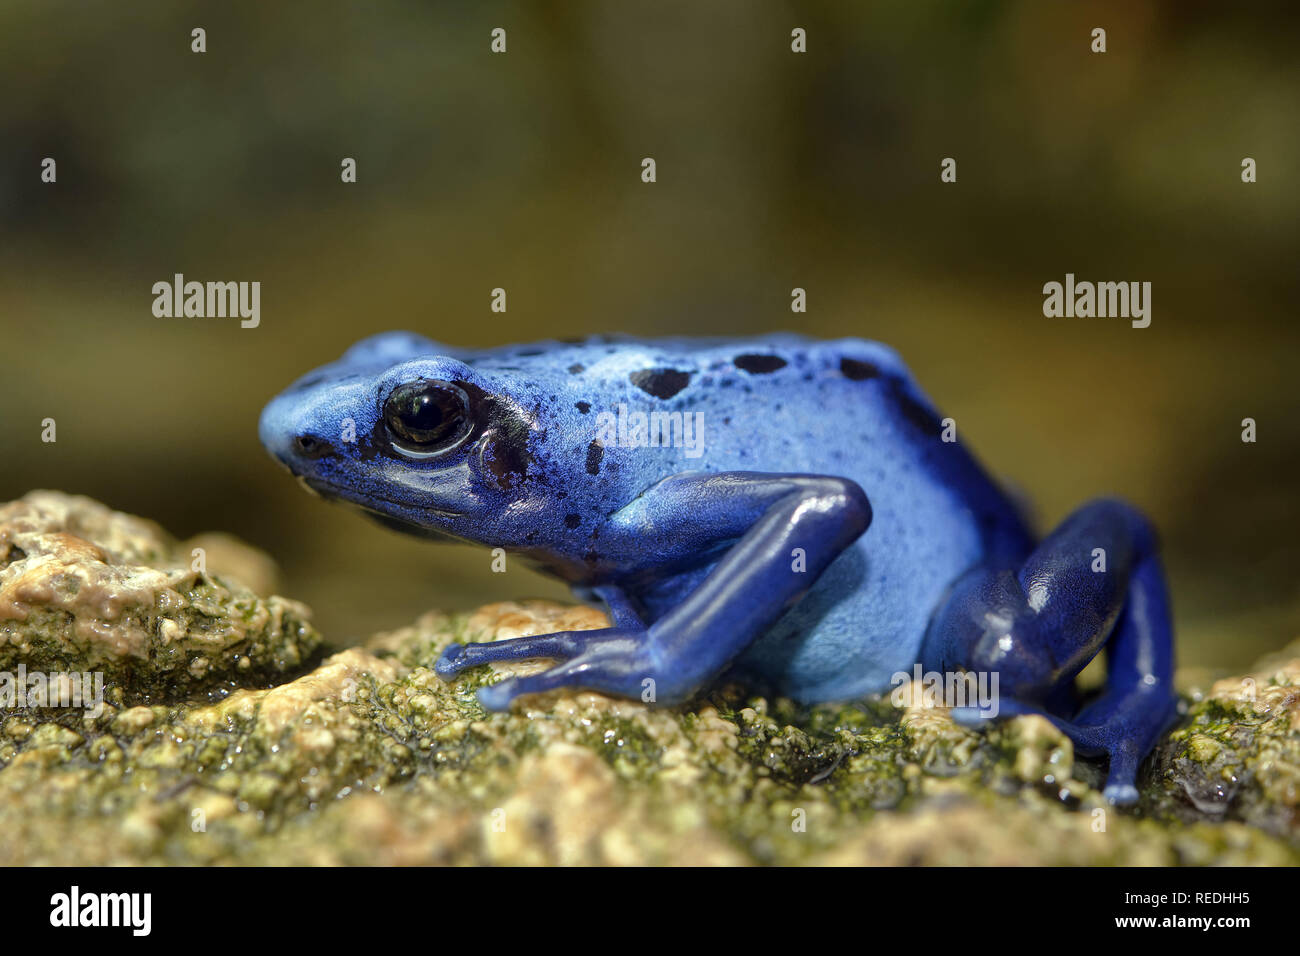 Blue poison dart frog - Dendrobates tinctorius 'azureus' Stock Photo